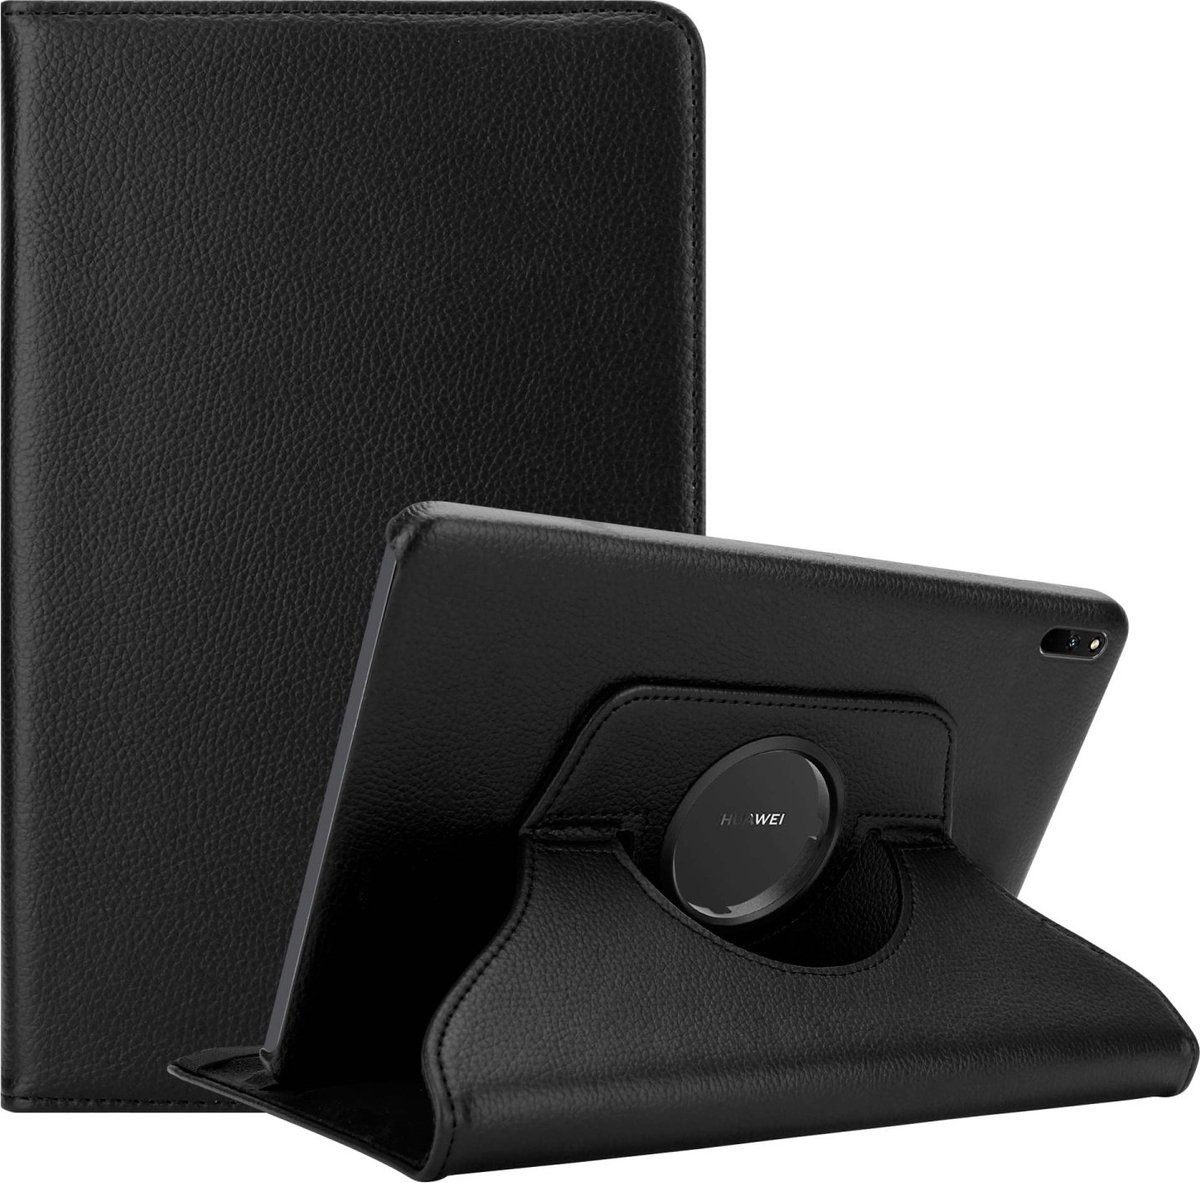 Cadorabo Tablet Hoesje voor Huawei MatePad 11 (10.95 inch) in OUDERLING ZWART - Beschermhoes ZONDER auto Wake Up, met stand functie en elastische band sluiting Book Case Cover Etui